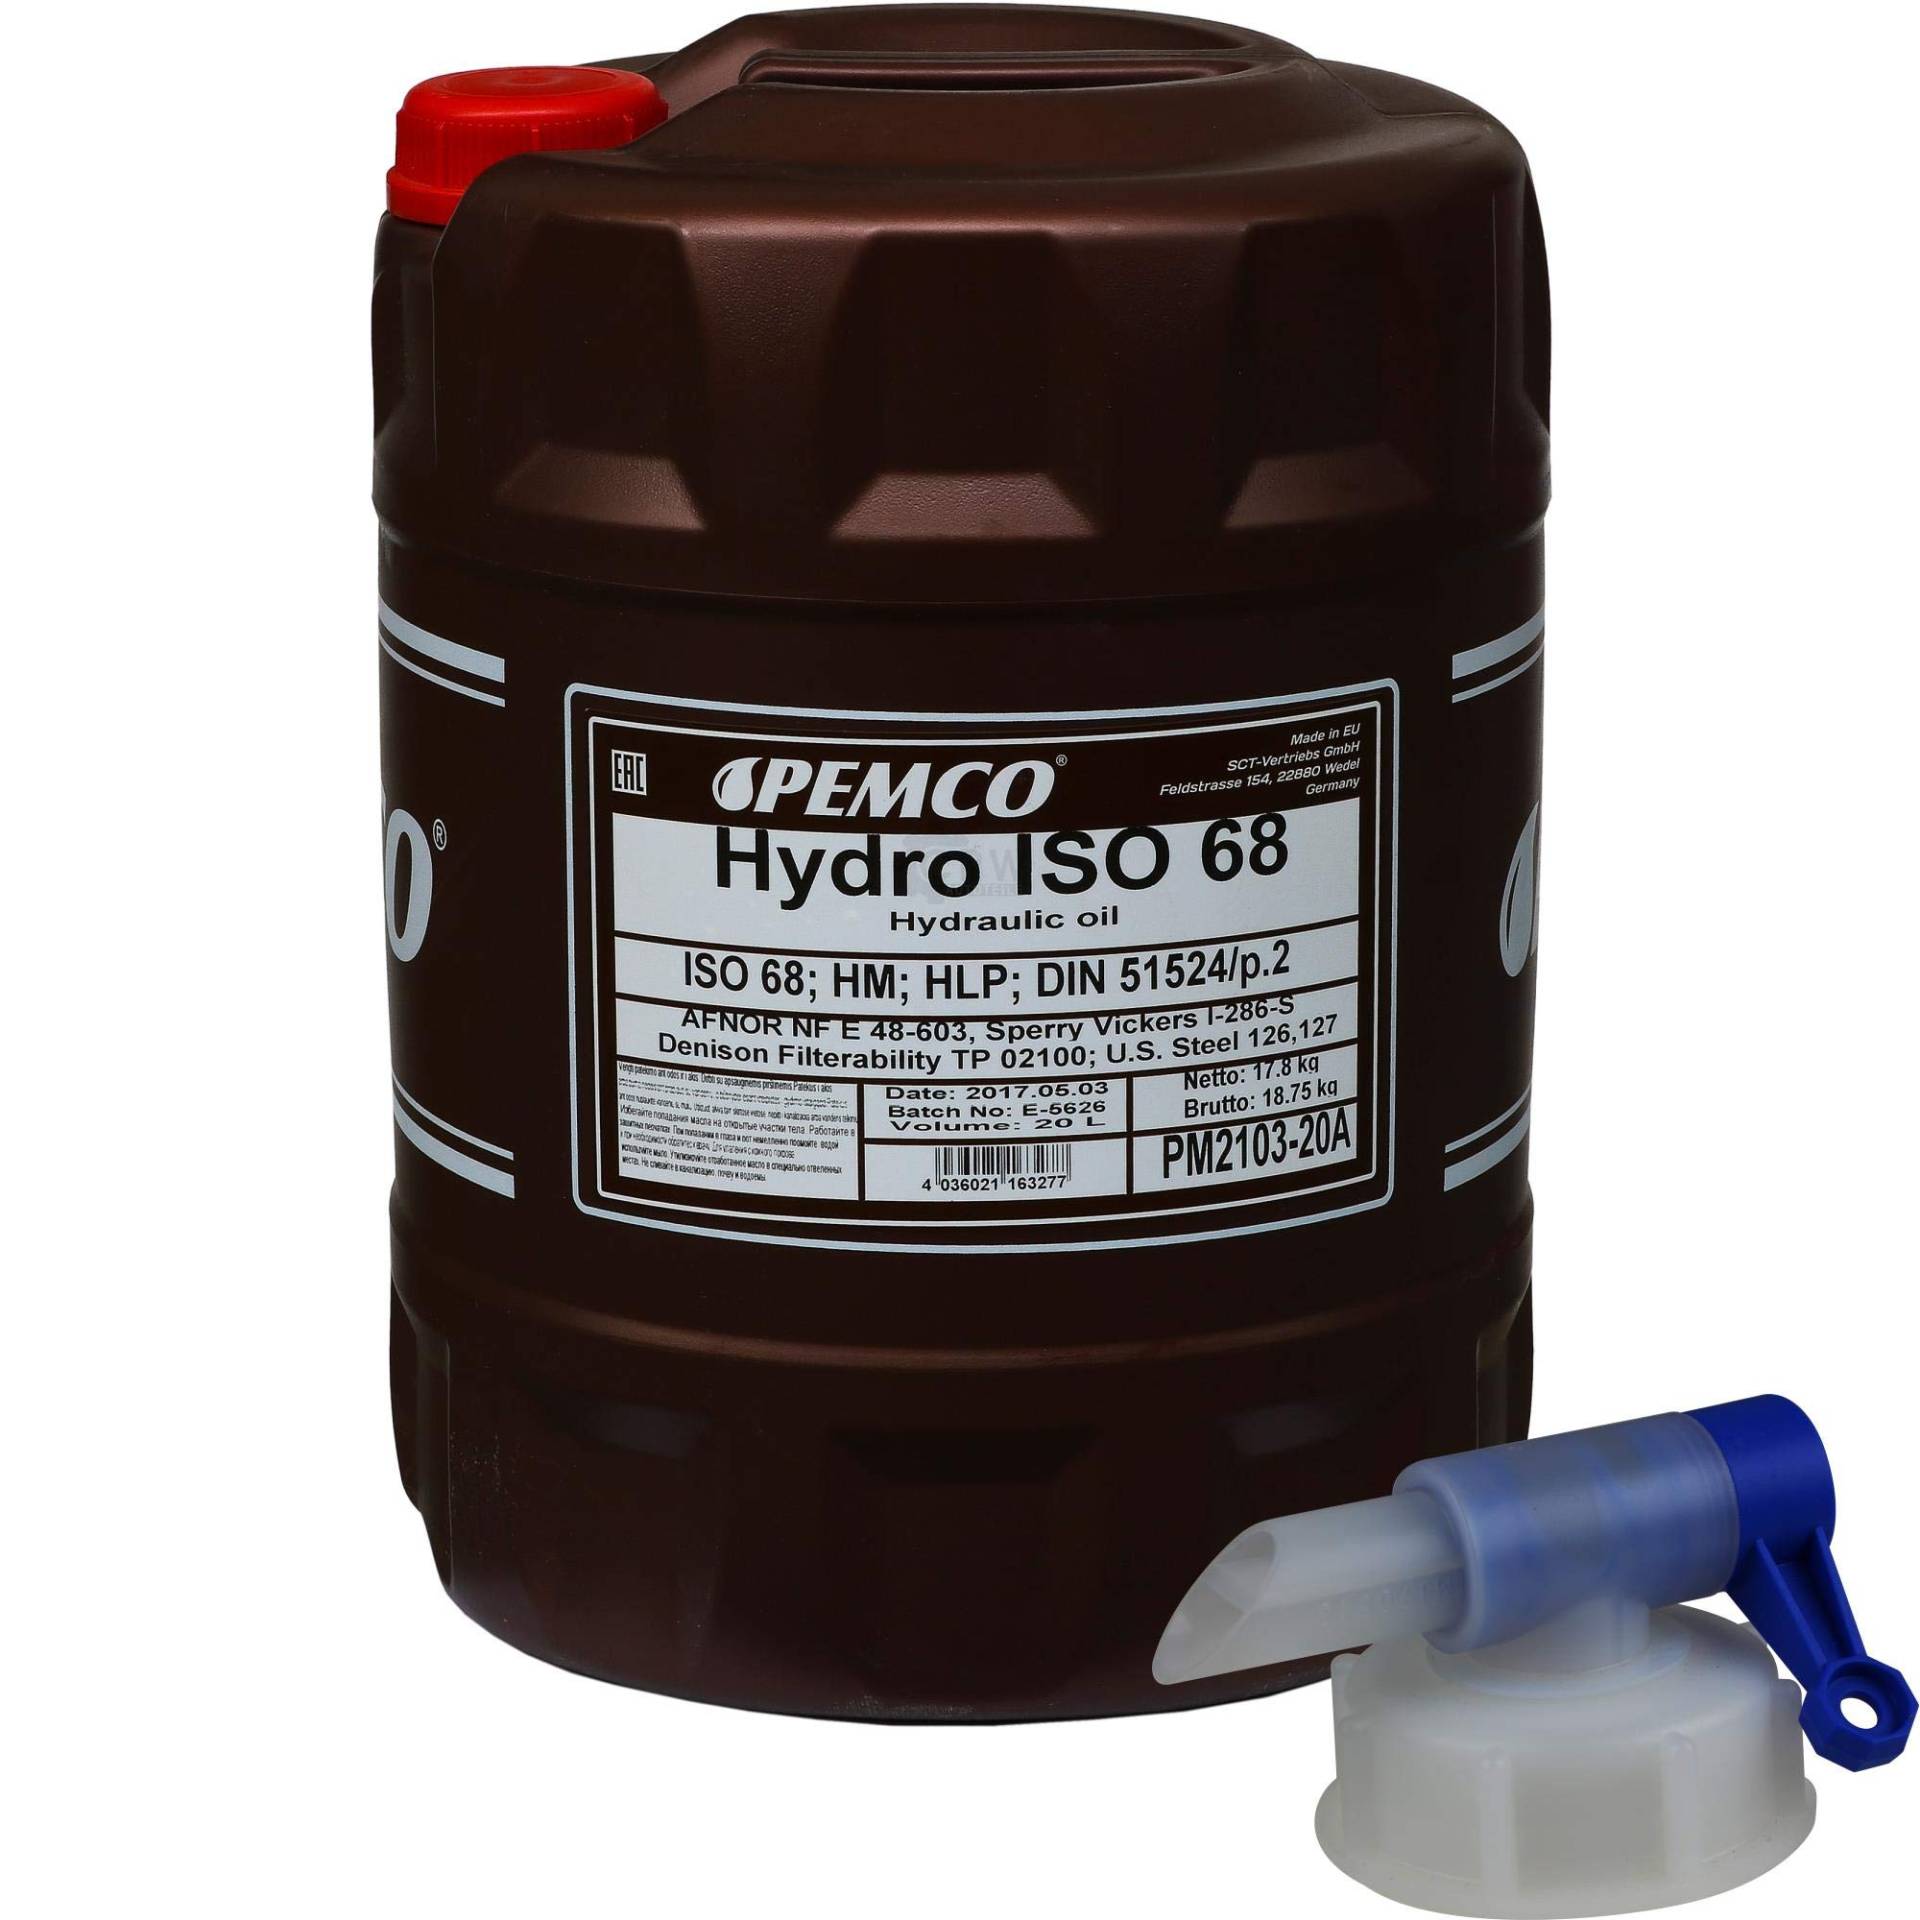 20 Liter Original PEMCO Hydrauliköl ISO 68 Hydro HLP 68 Oil inkl. Auslaufhahn von Pemco